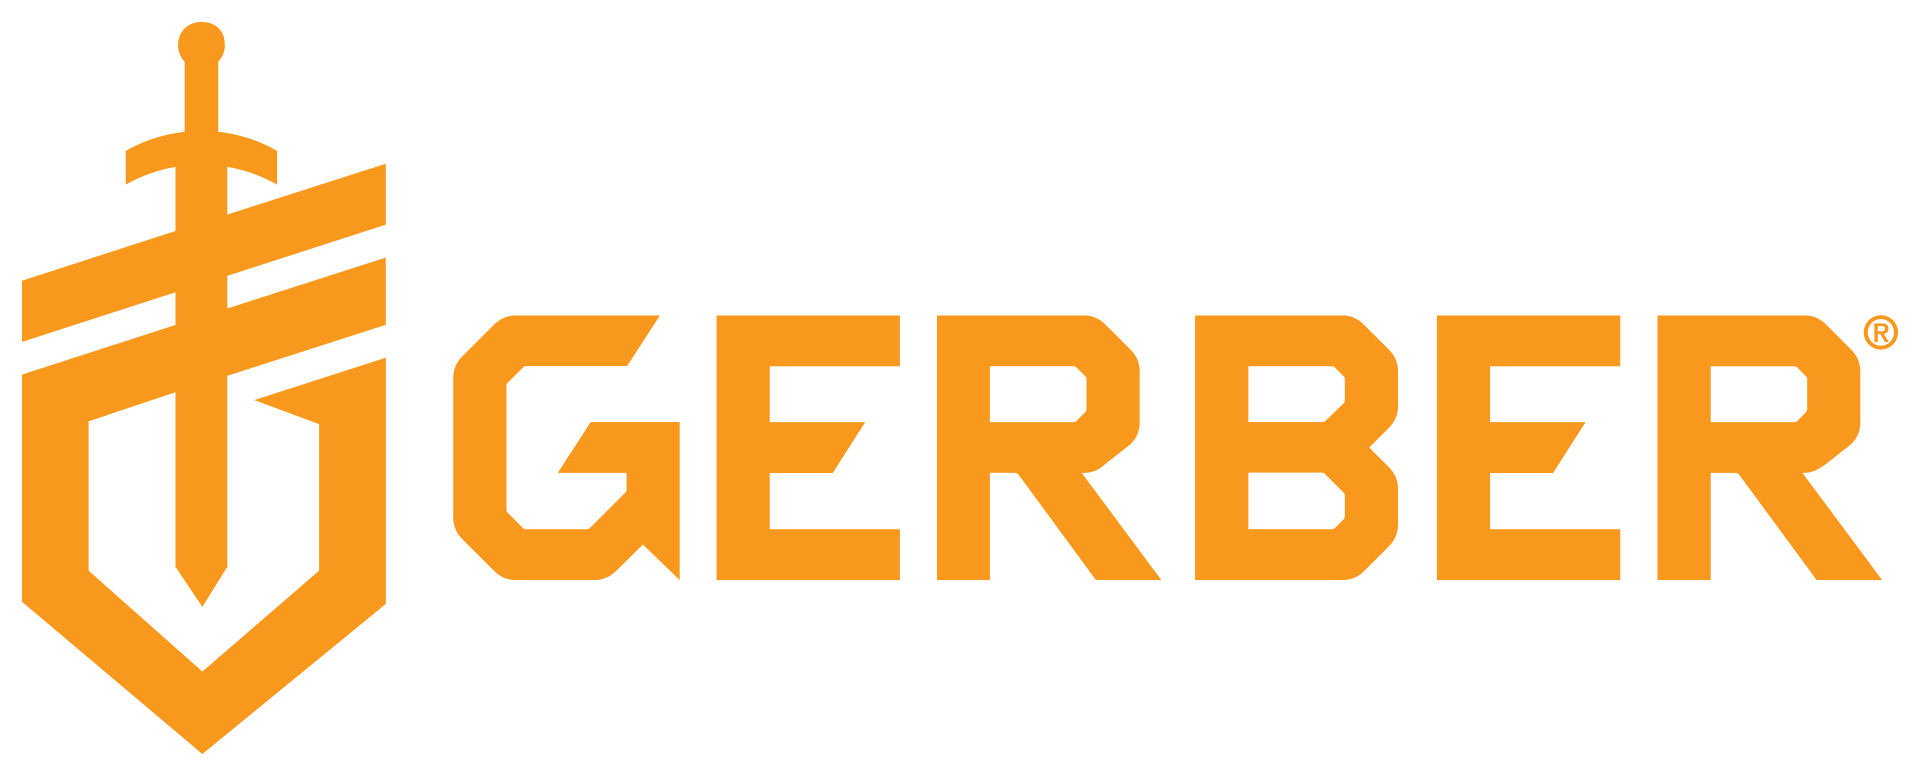 brand-logos/gerber.png